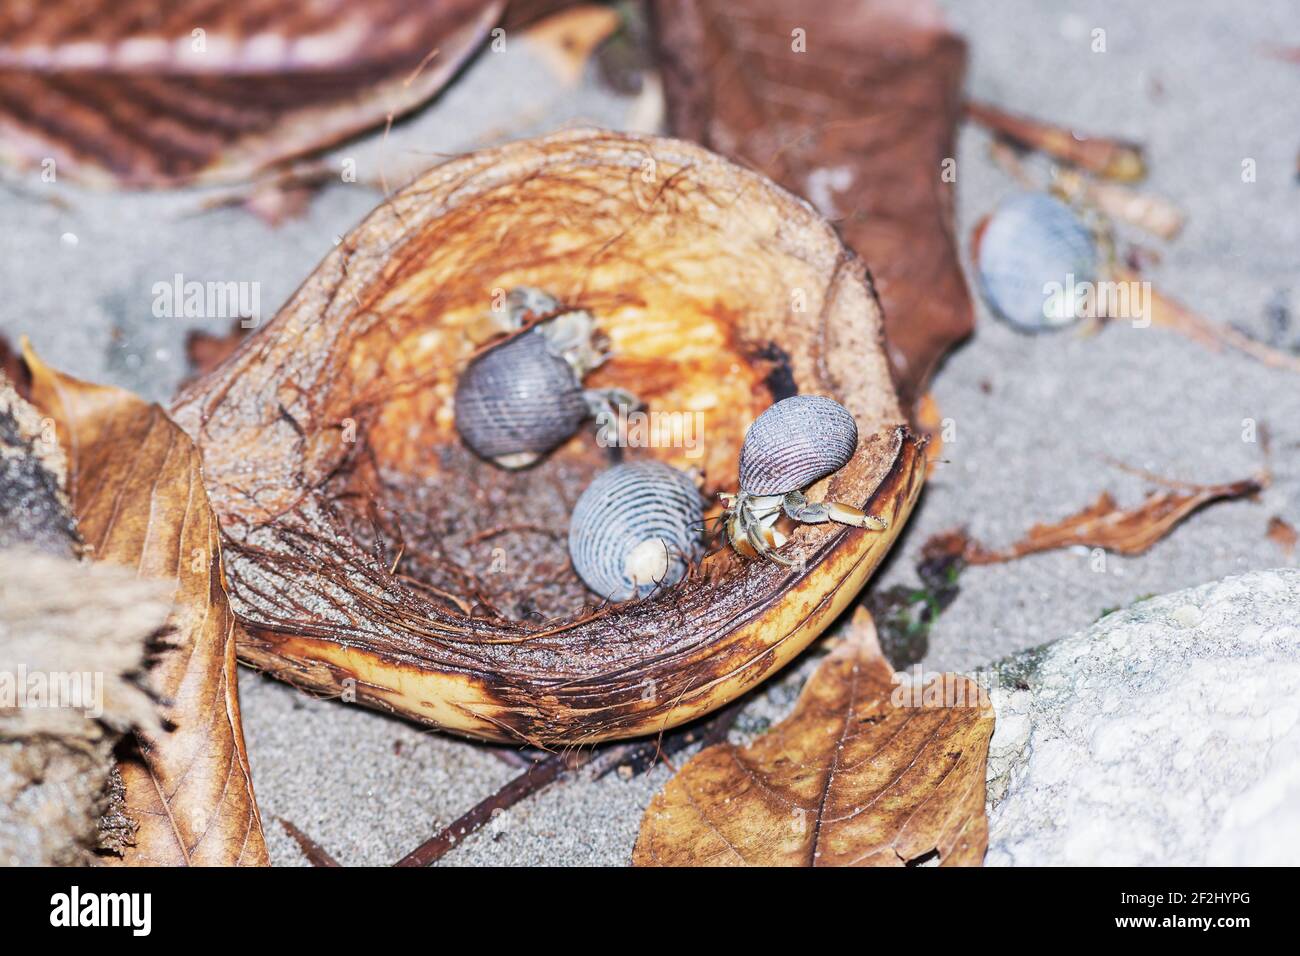 Groupe de crabes hermit (PaguroIdea) mangeant de la noix de coco, Parc national Manuel Antonio, Province de Puntarenas, Costa Rica. Banque D'Images